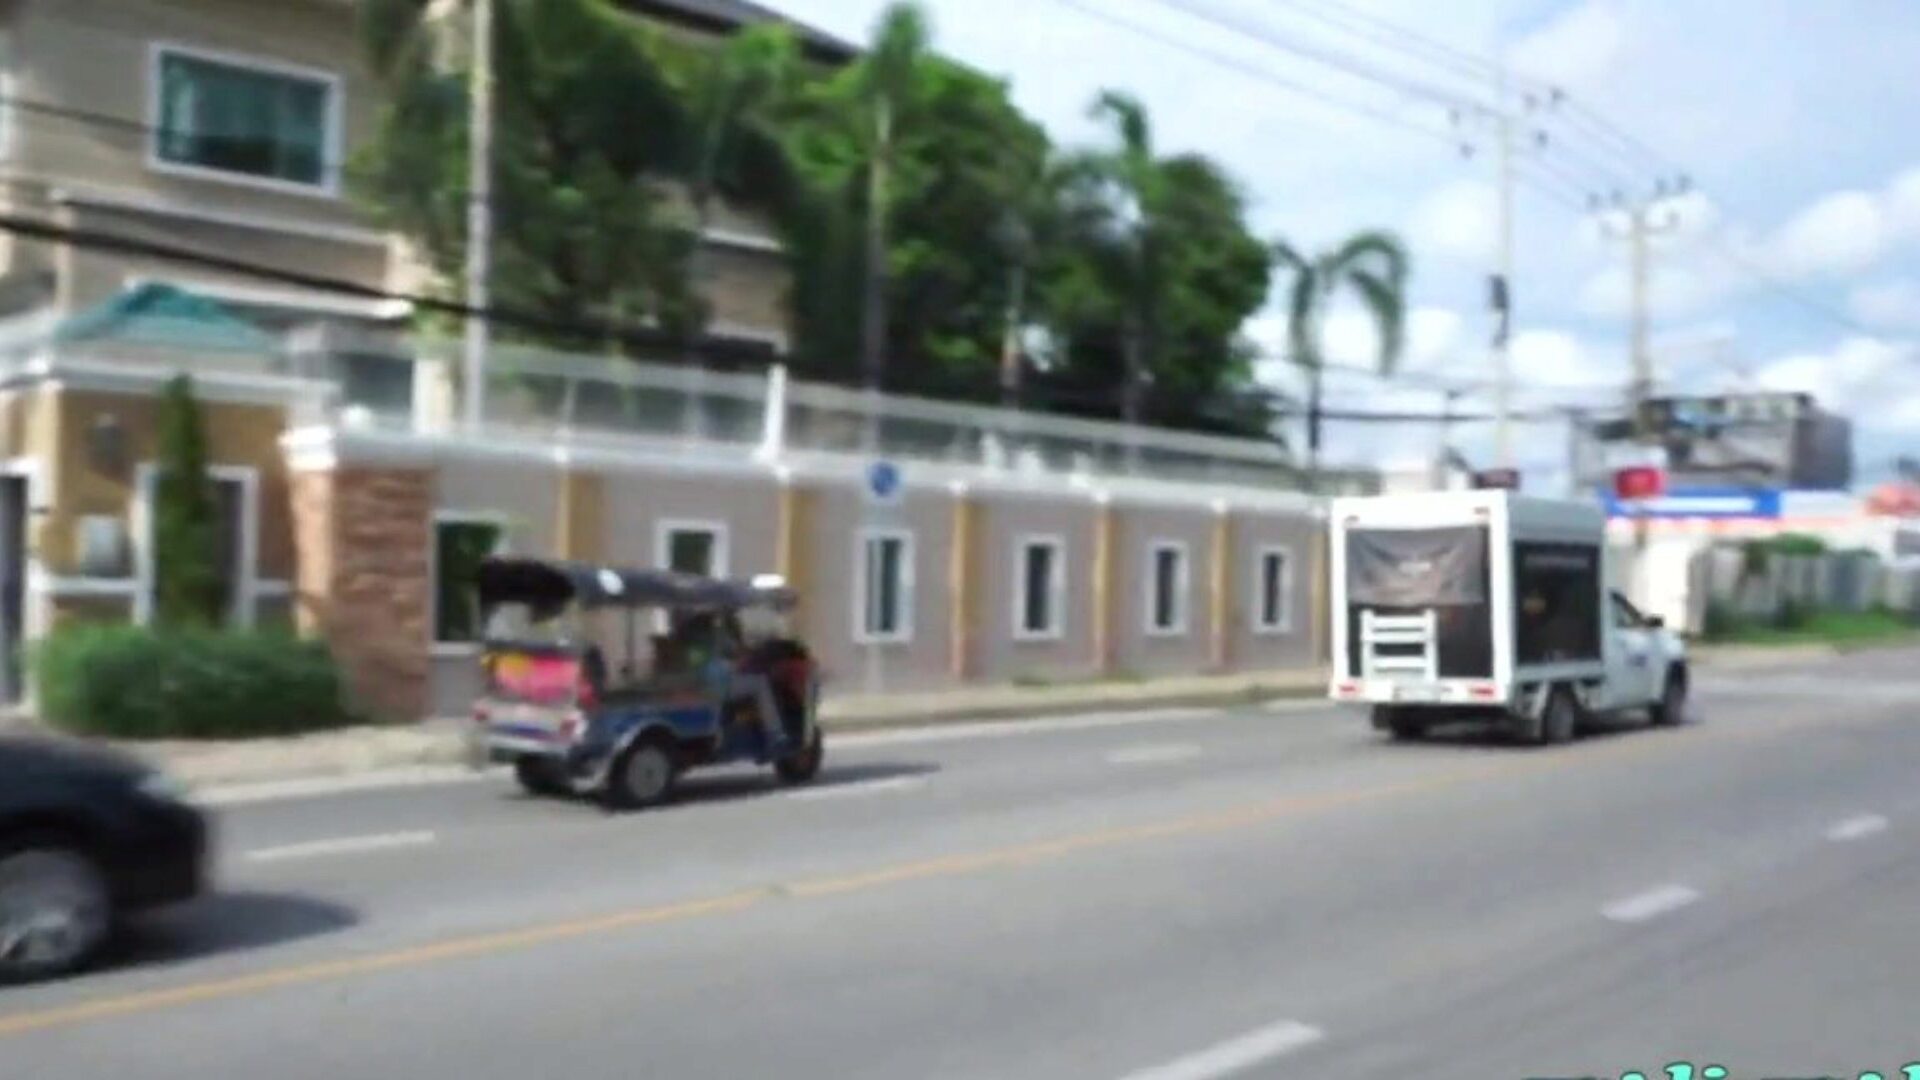 tuktukpatrol мясо-полюсный Pinay вертушка имеет подарки: HD порно 9c смотреть tuktukpatrol мясо-полюсного Pinay вертушка имеет сцену подарков кино на xhamster - конечная база бесплатного азиатского нового Pinay HD видео хардкора порно трубными